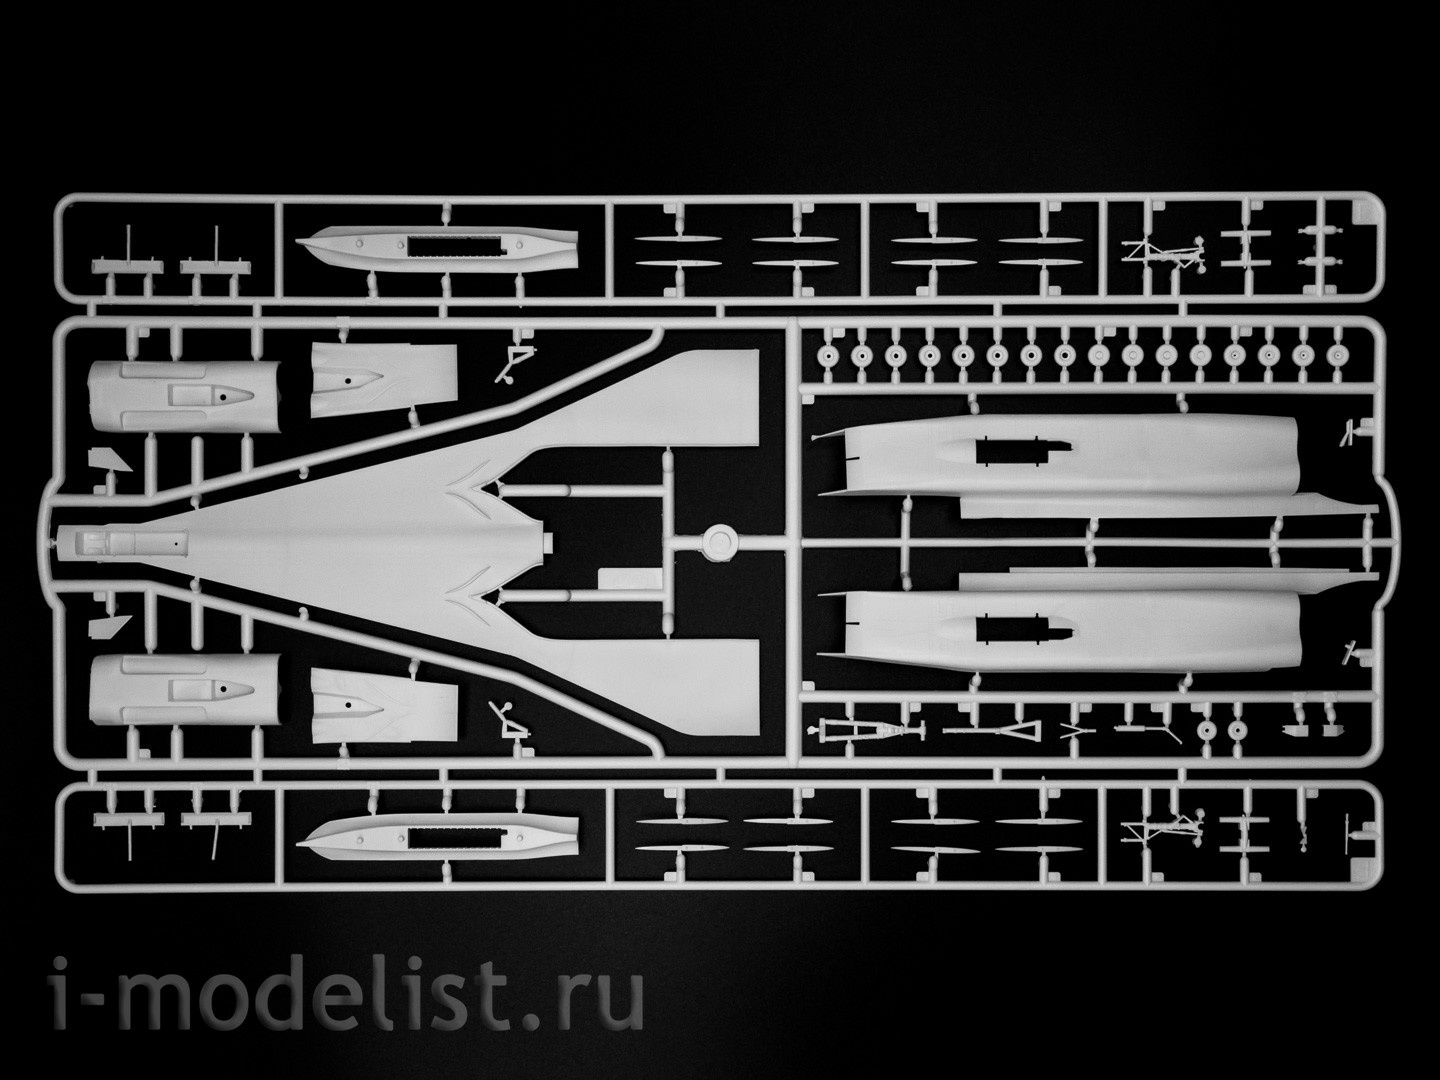 14401 ICM 1/144 Советский сверхзвуковой пассажирский самолет Tupolev-144